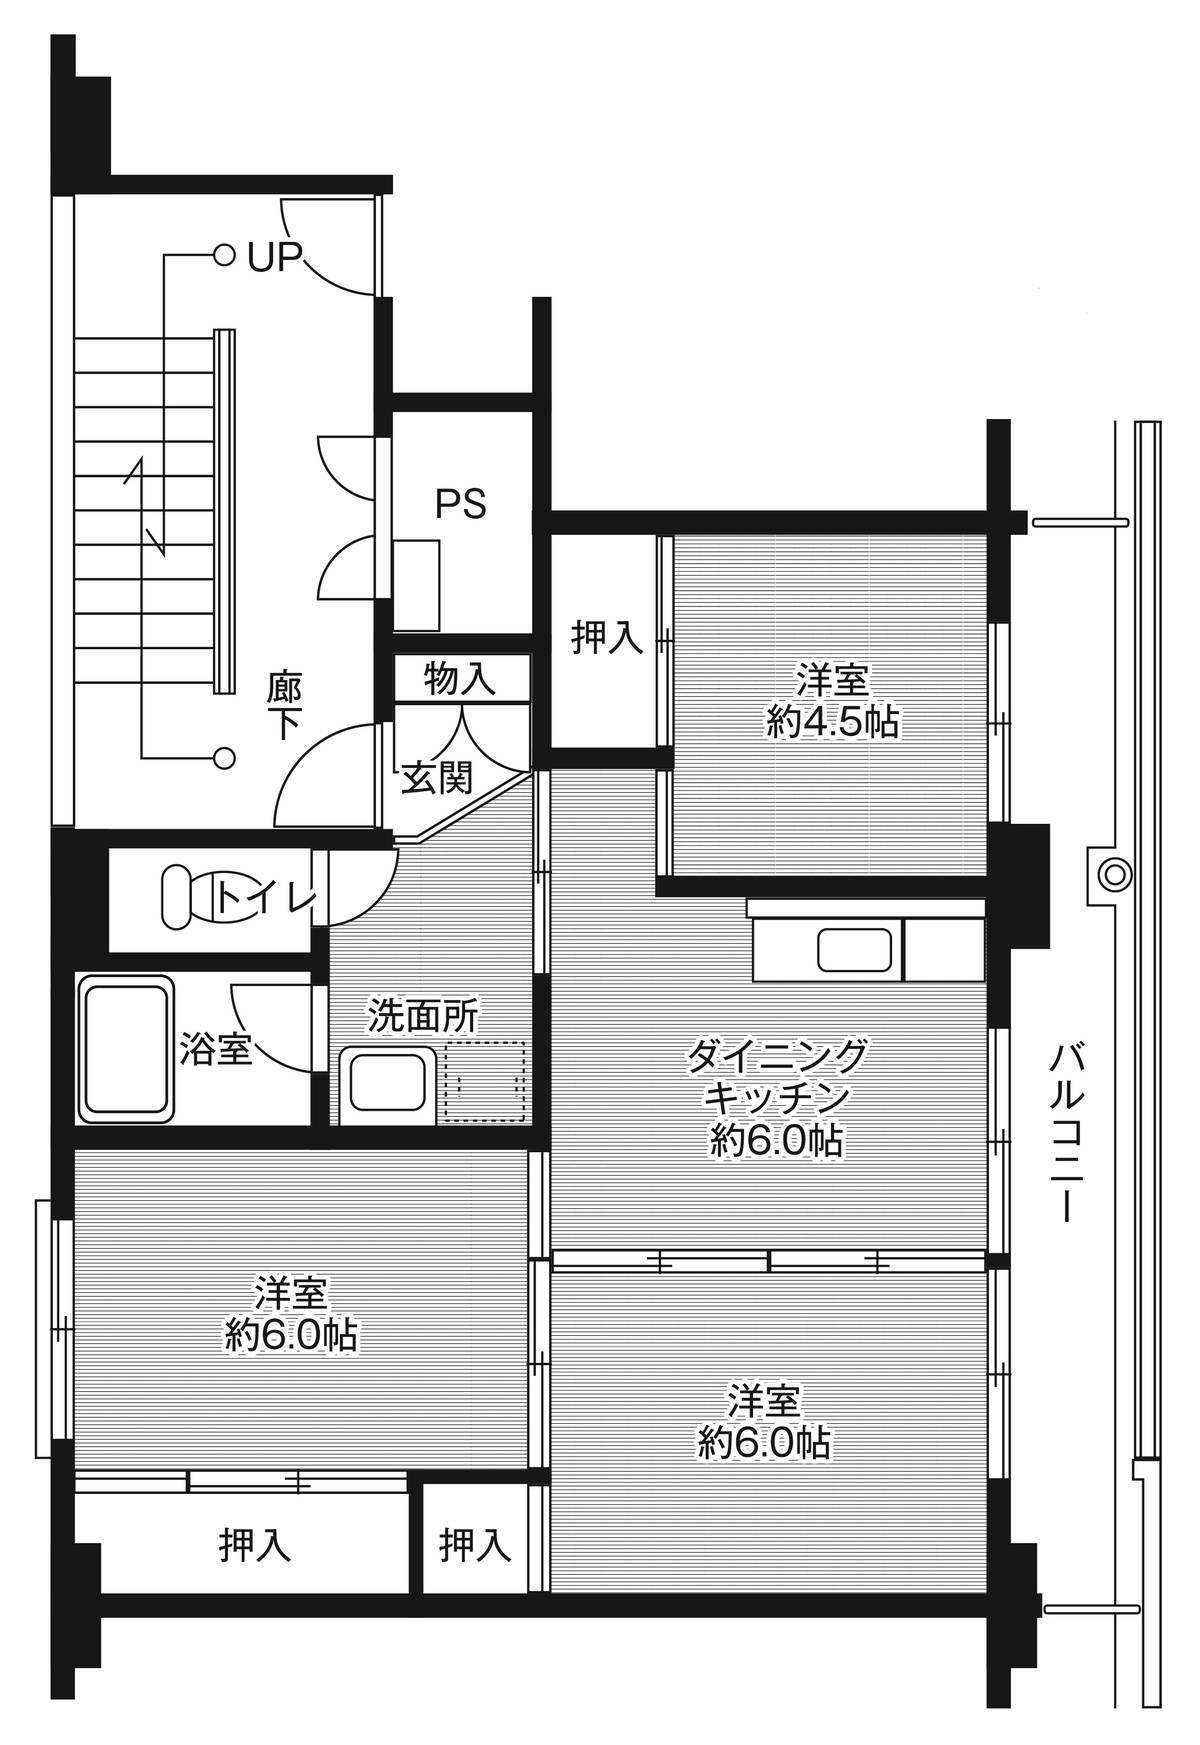 Sơ đồ phòng 3DK của Village House Dousen ở Kamaishi-shi